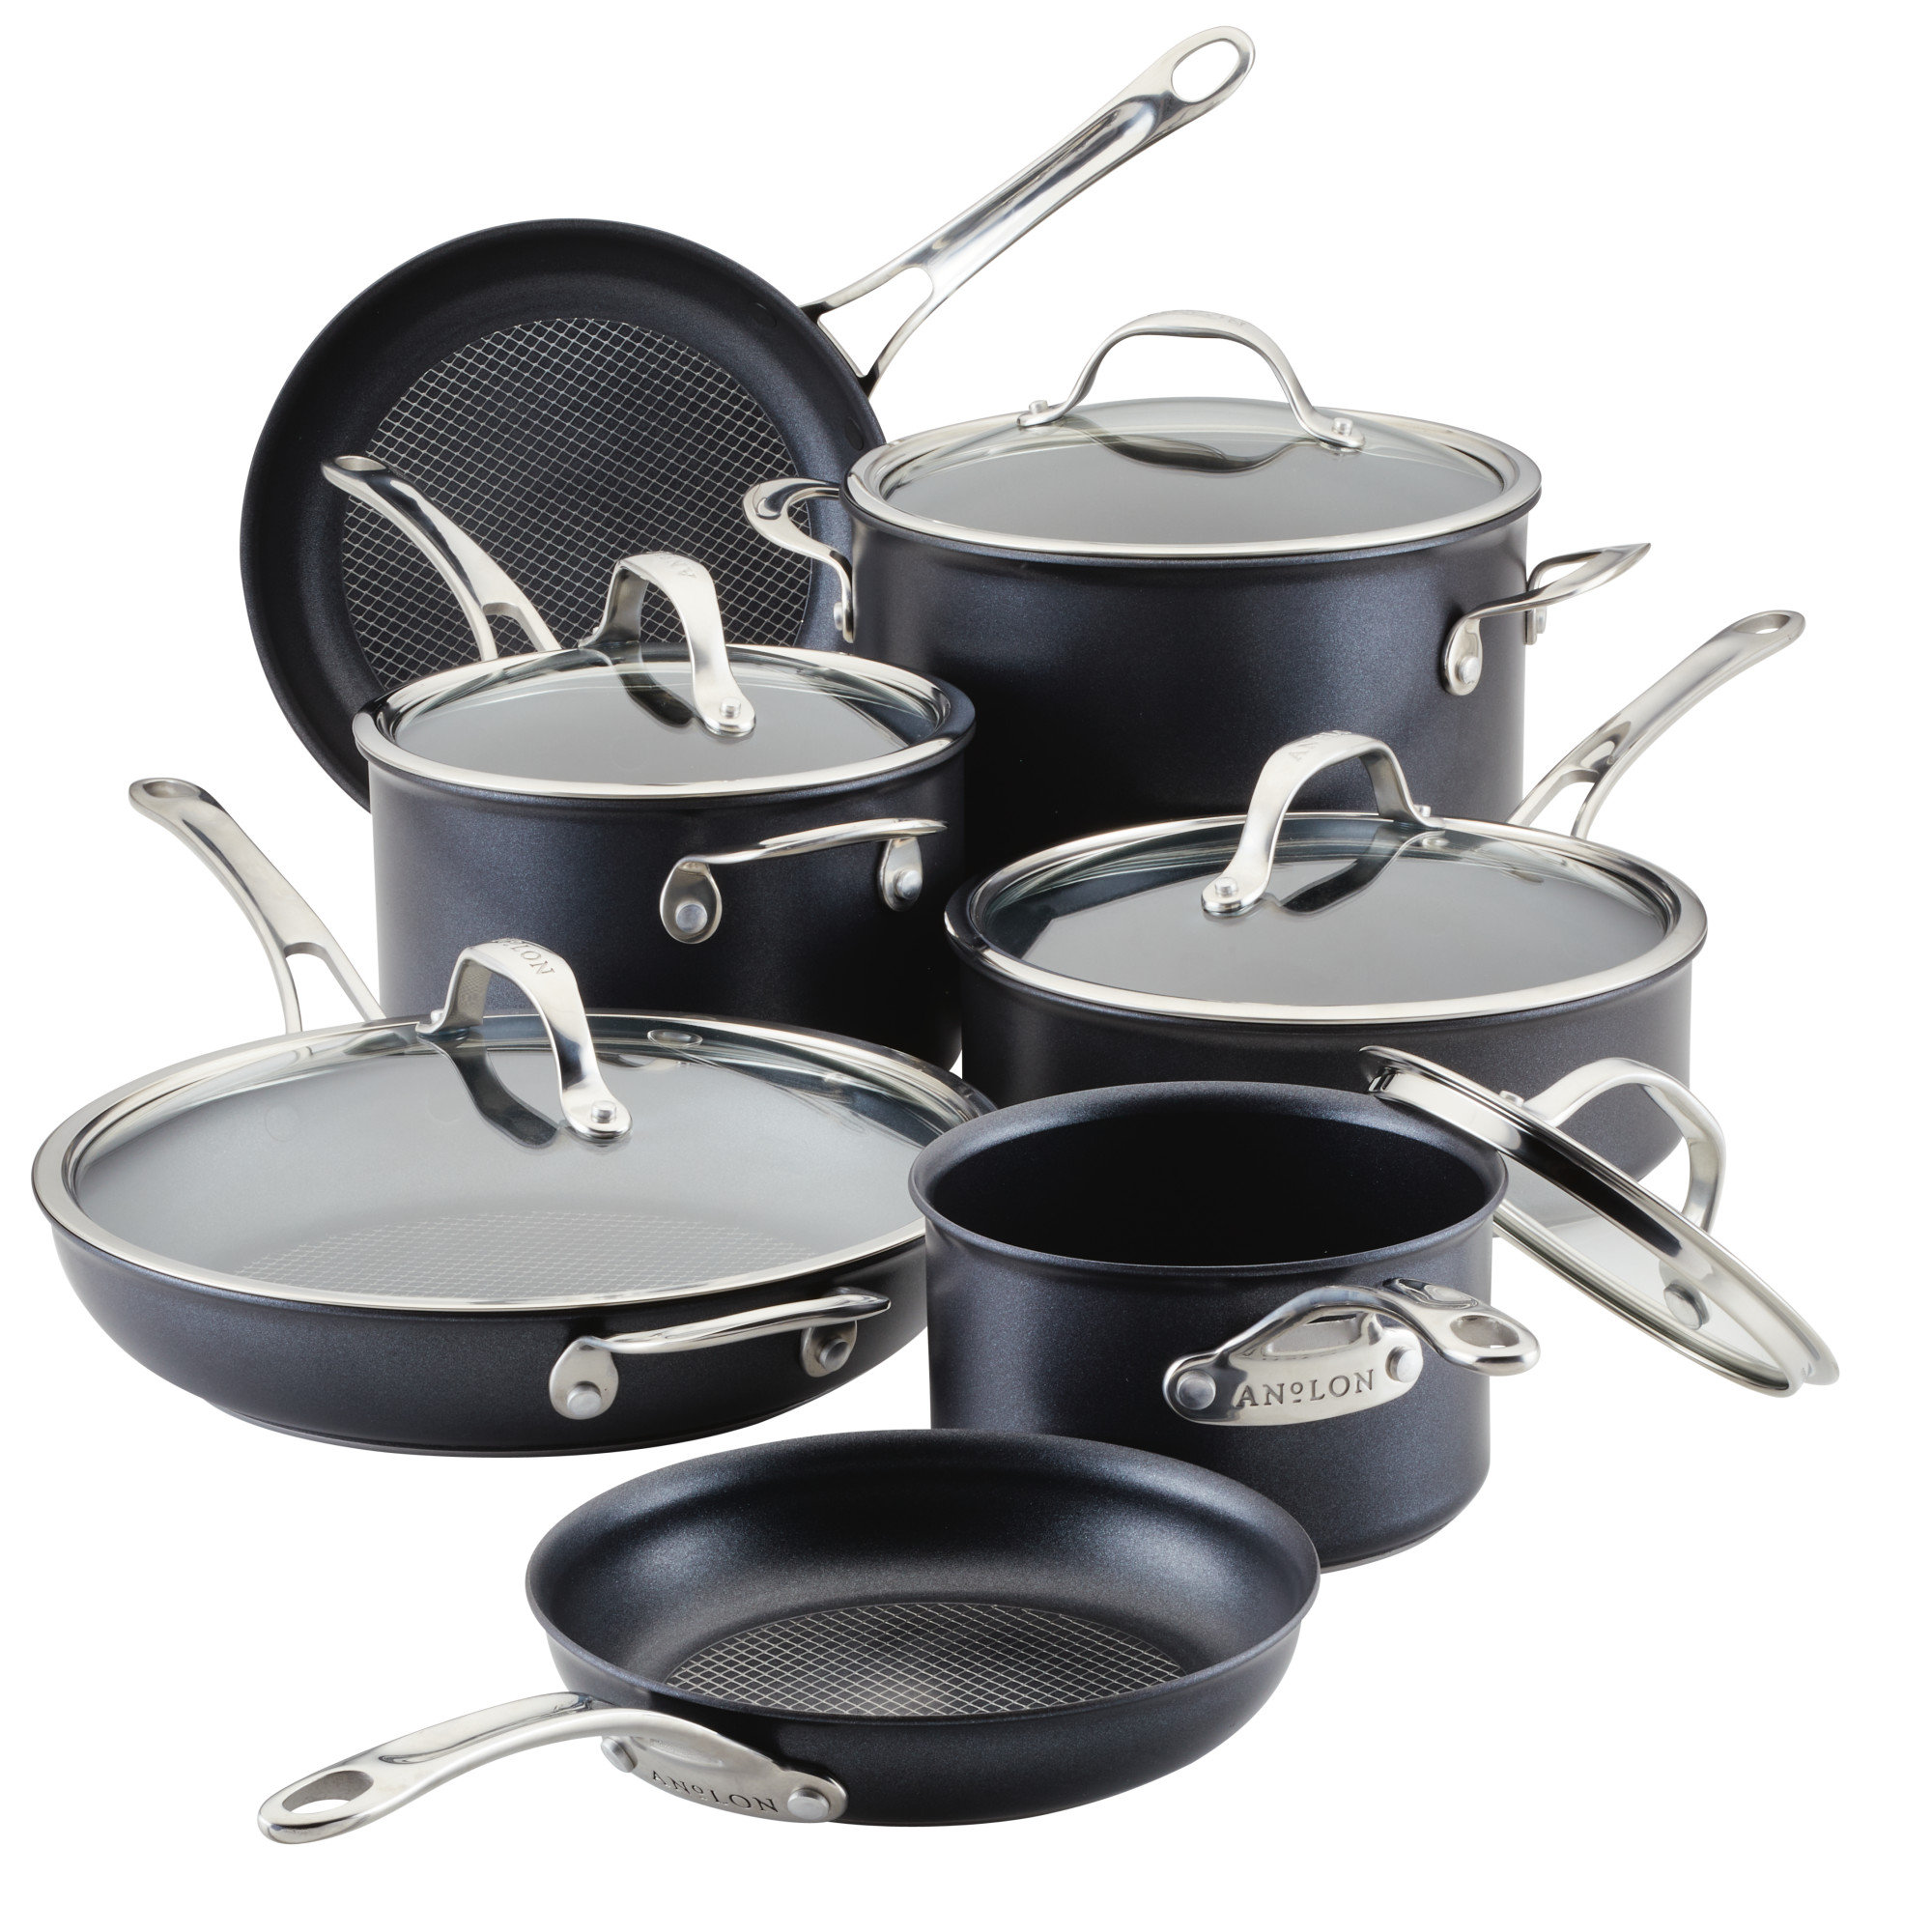 https://assets.wfcdn.com/im/27209869/compr-r85/2587/258774282/anolon-x-hybrid-nonstick-aluminum-nonstick-cookware-induction-pots-and-pans-set-12-piece-dark-gray.jpg